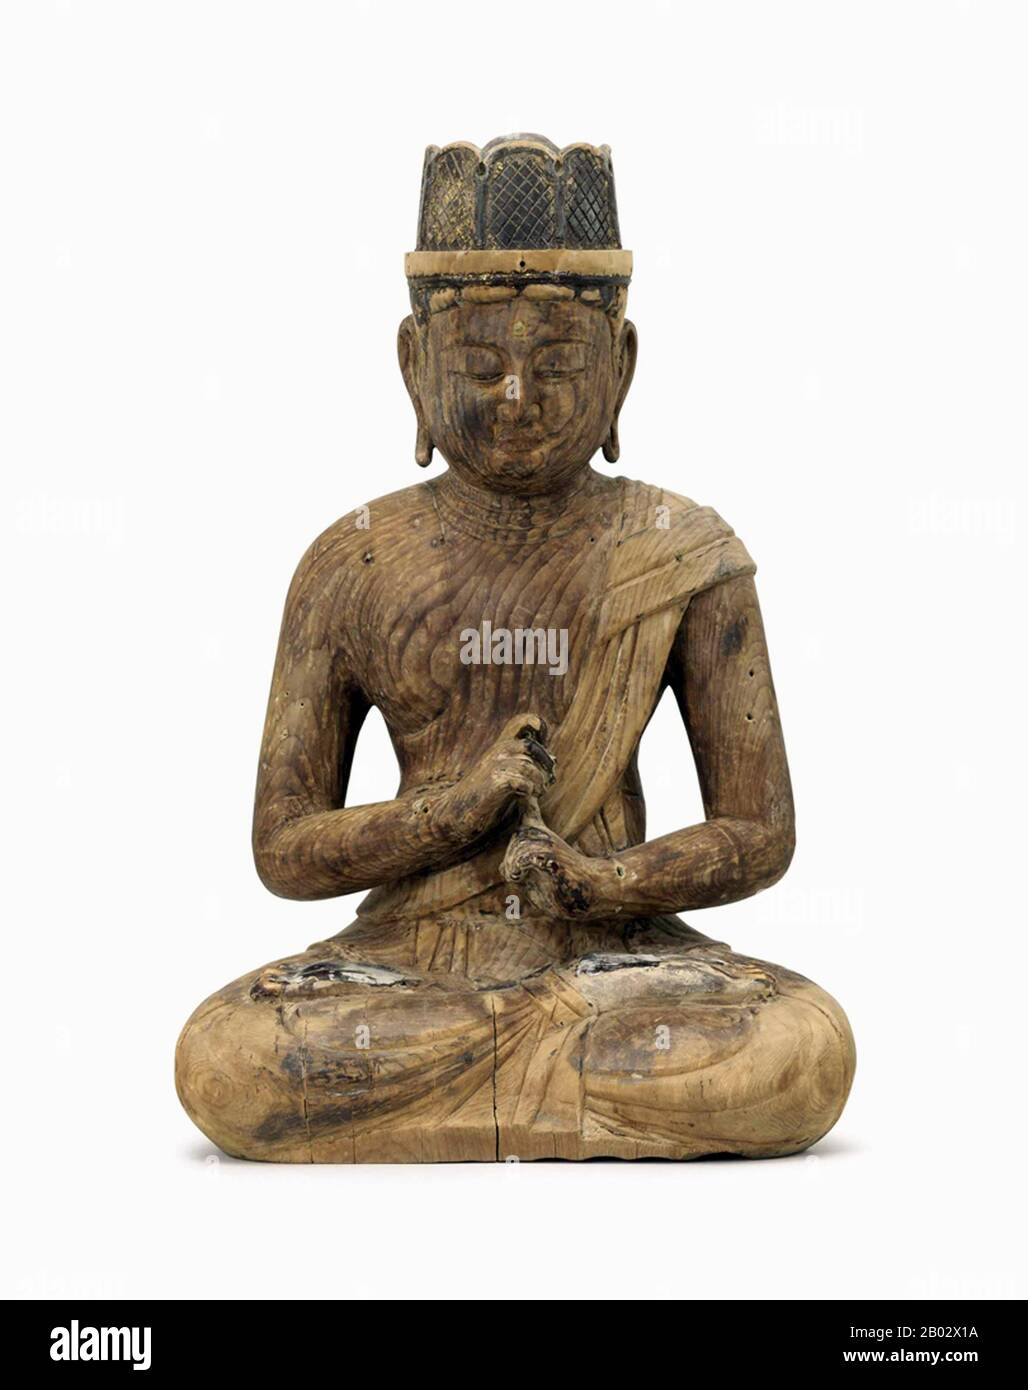 Vairocana (auch Vairochana oder Mahavairocana, ist ein himmelskbuddha, der oft in Texten wie dem Blumengarland-Sutra als Glückskörper des historischen Buddha (Siddhartha Gautama) interpretiert wird. Im chinesischen, koreanischen und japanischen Buddhismus wird Vairocana auch als Verkörperung des buddhistischen Konzepts der Leere angesehen. In der Konzeption der Fünf Wisdom Buddhas des Mahayana- und Vajrayana-Buddhismus steht Vairocana im Zentrum und gilt als ein Primordial Buddha. Stockfoto